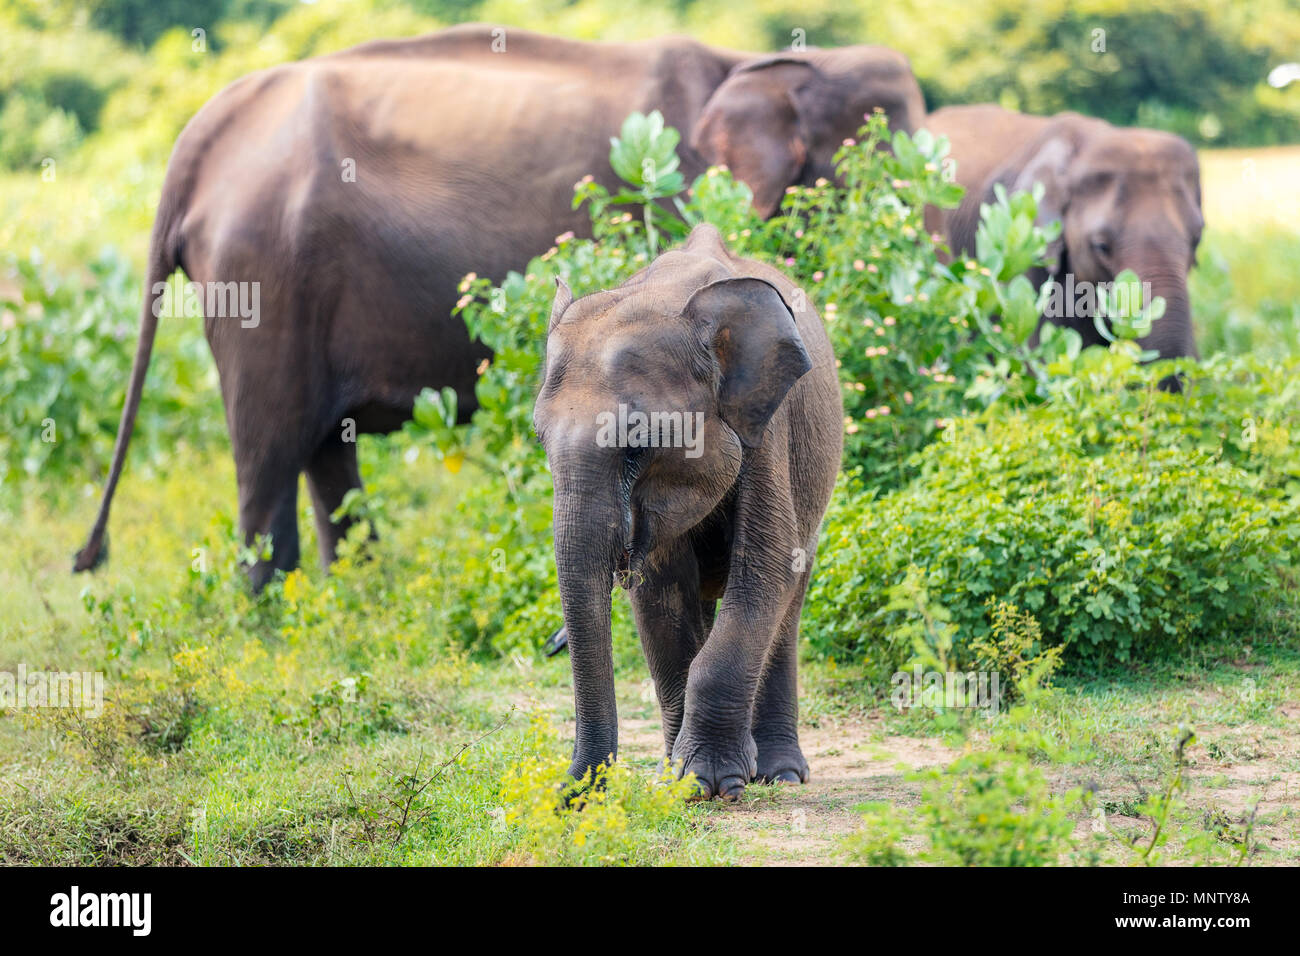 Sri Lankan wild elephants in safari national park Stock Photo